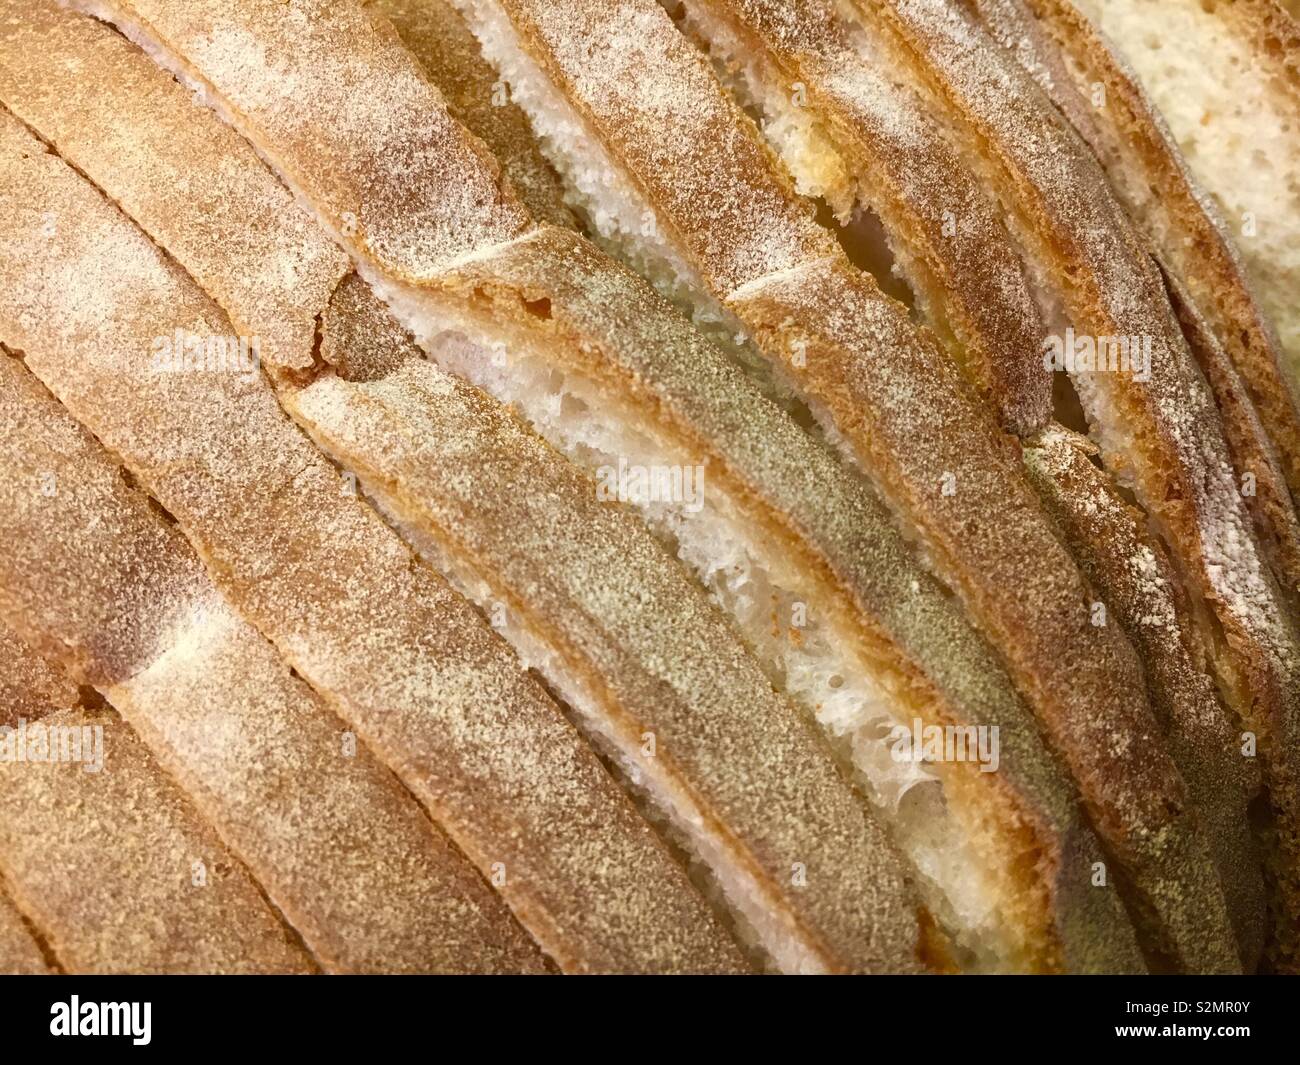 Tranches de pain fraîchement cuit au four Banque D'Images